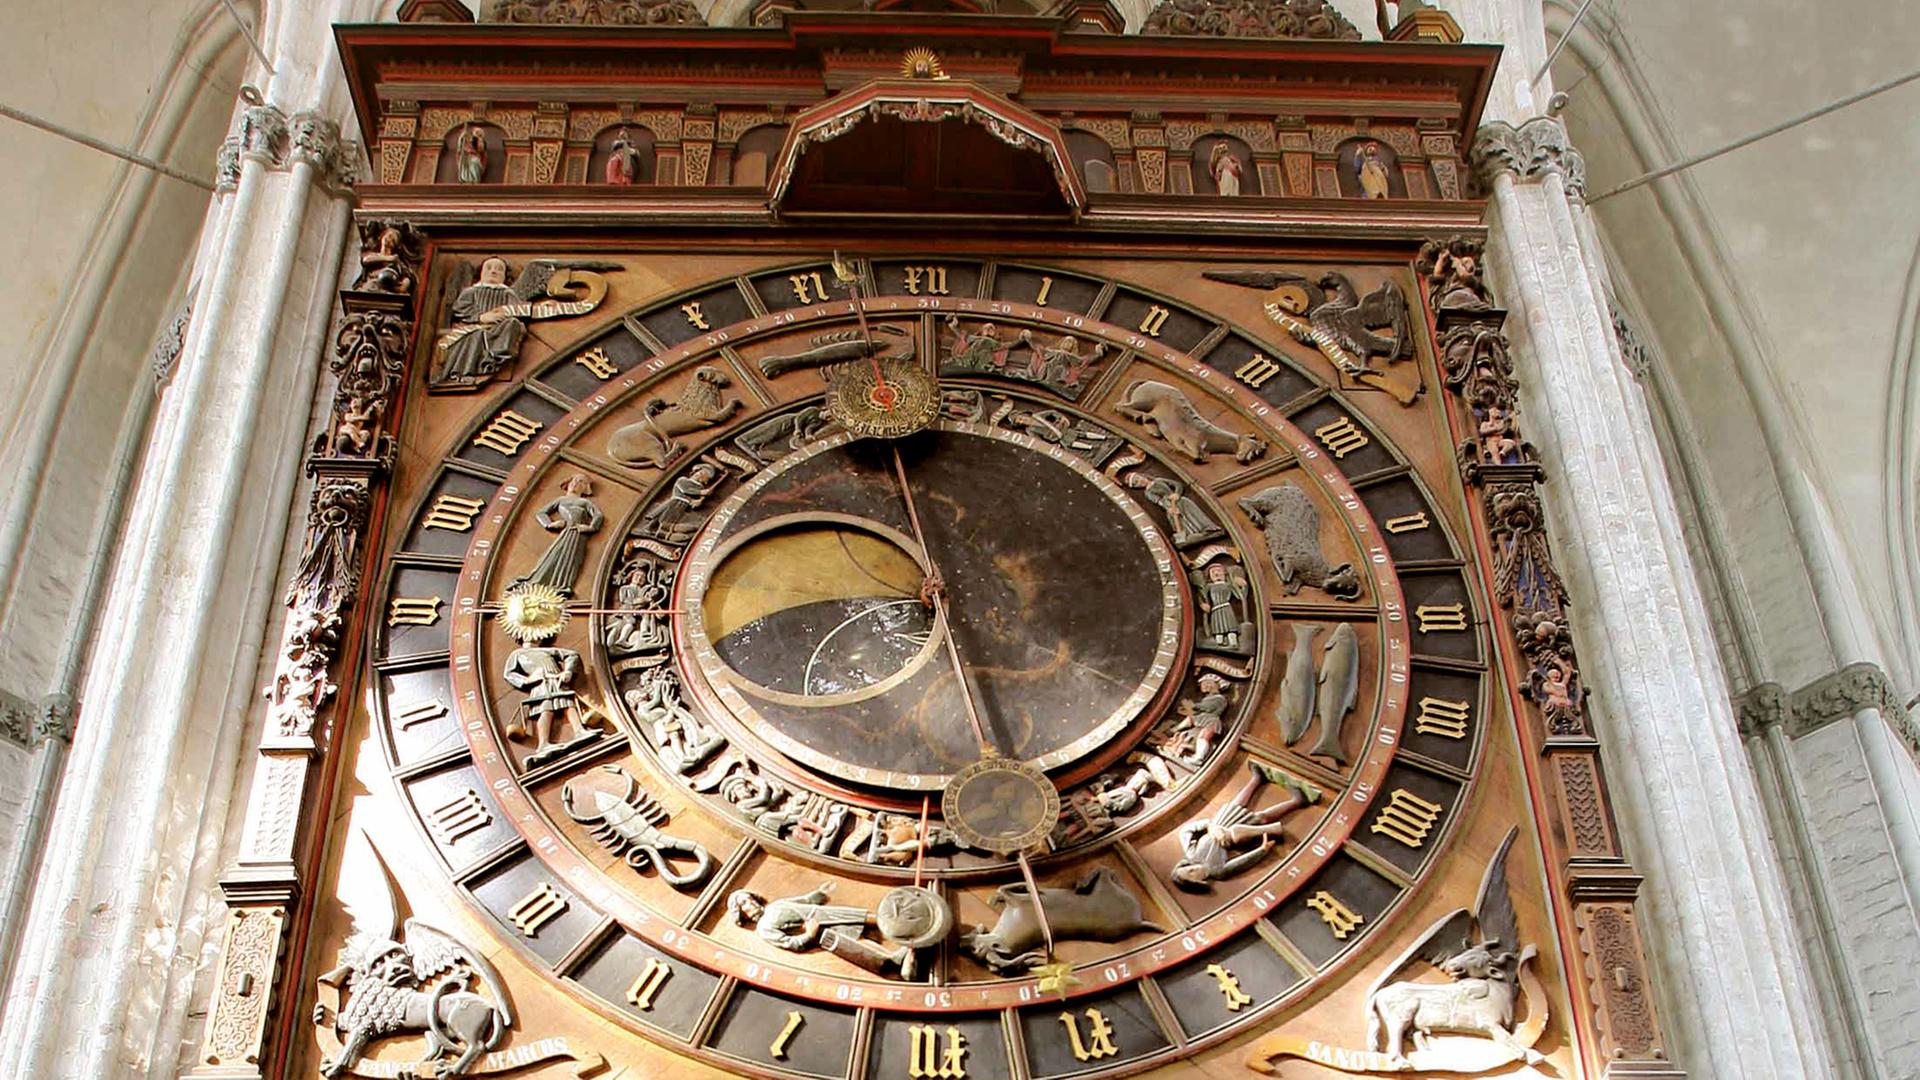 1472 wurde die Astronomische Uhr der Marienkirche in Rostock erbaut.